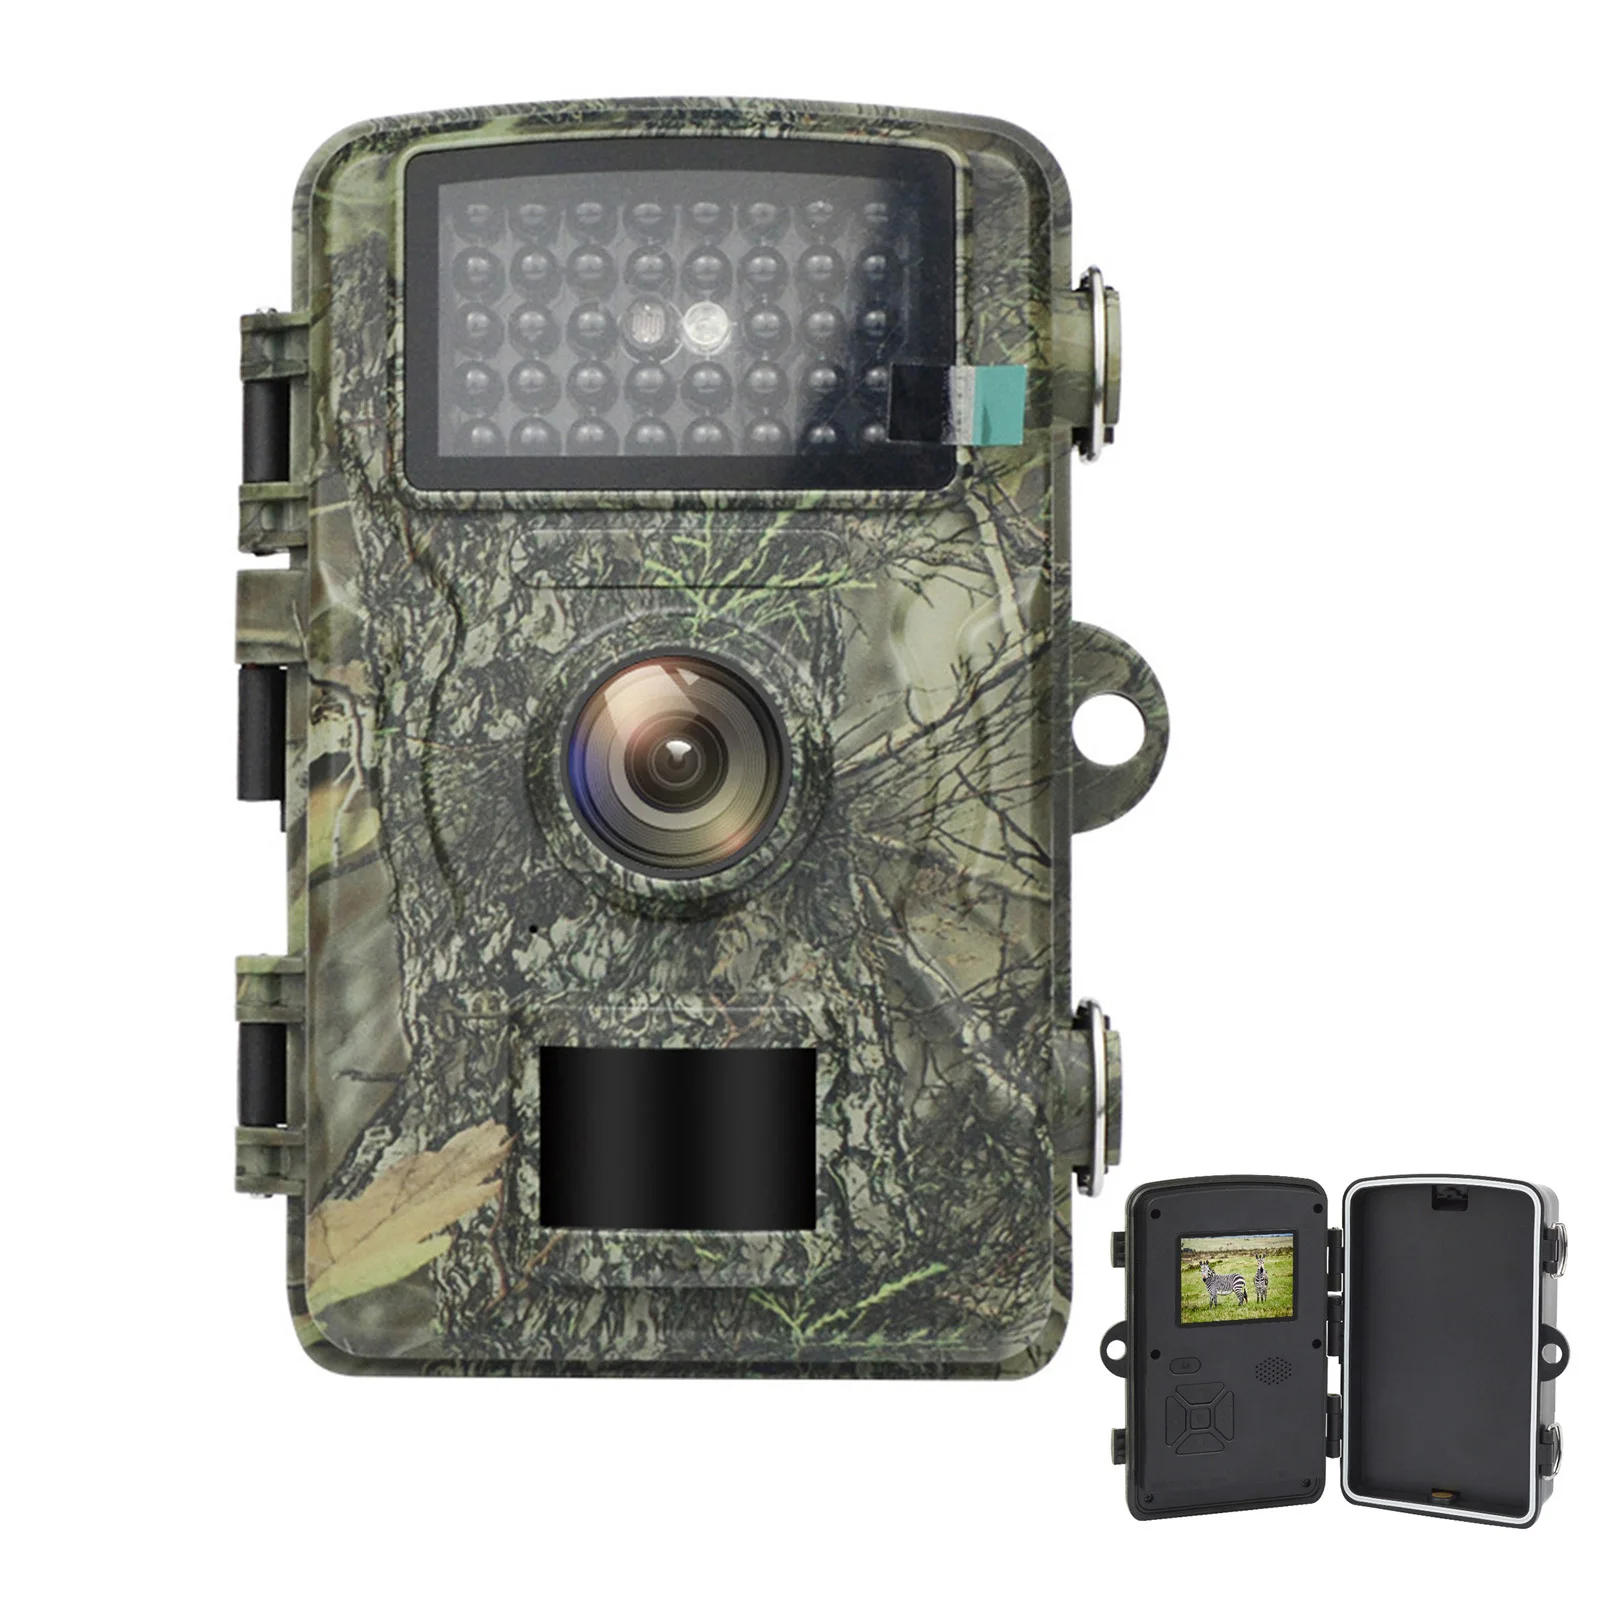 

Камера ночного видения для охоты, 16 Мп, с датчиком движения